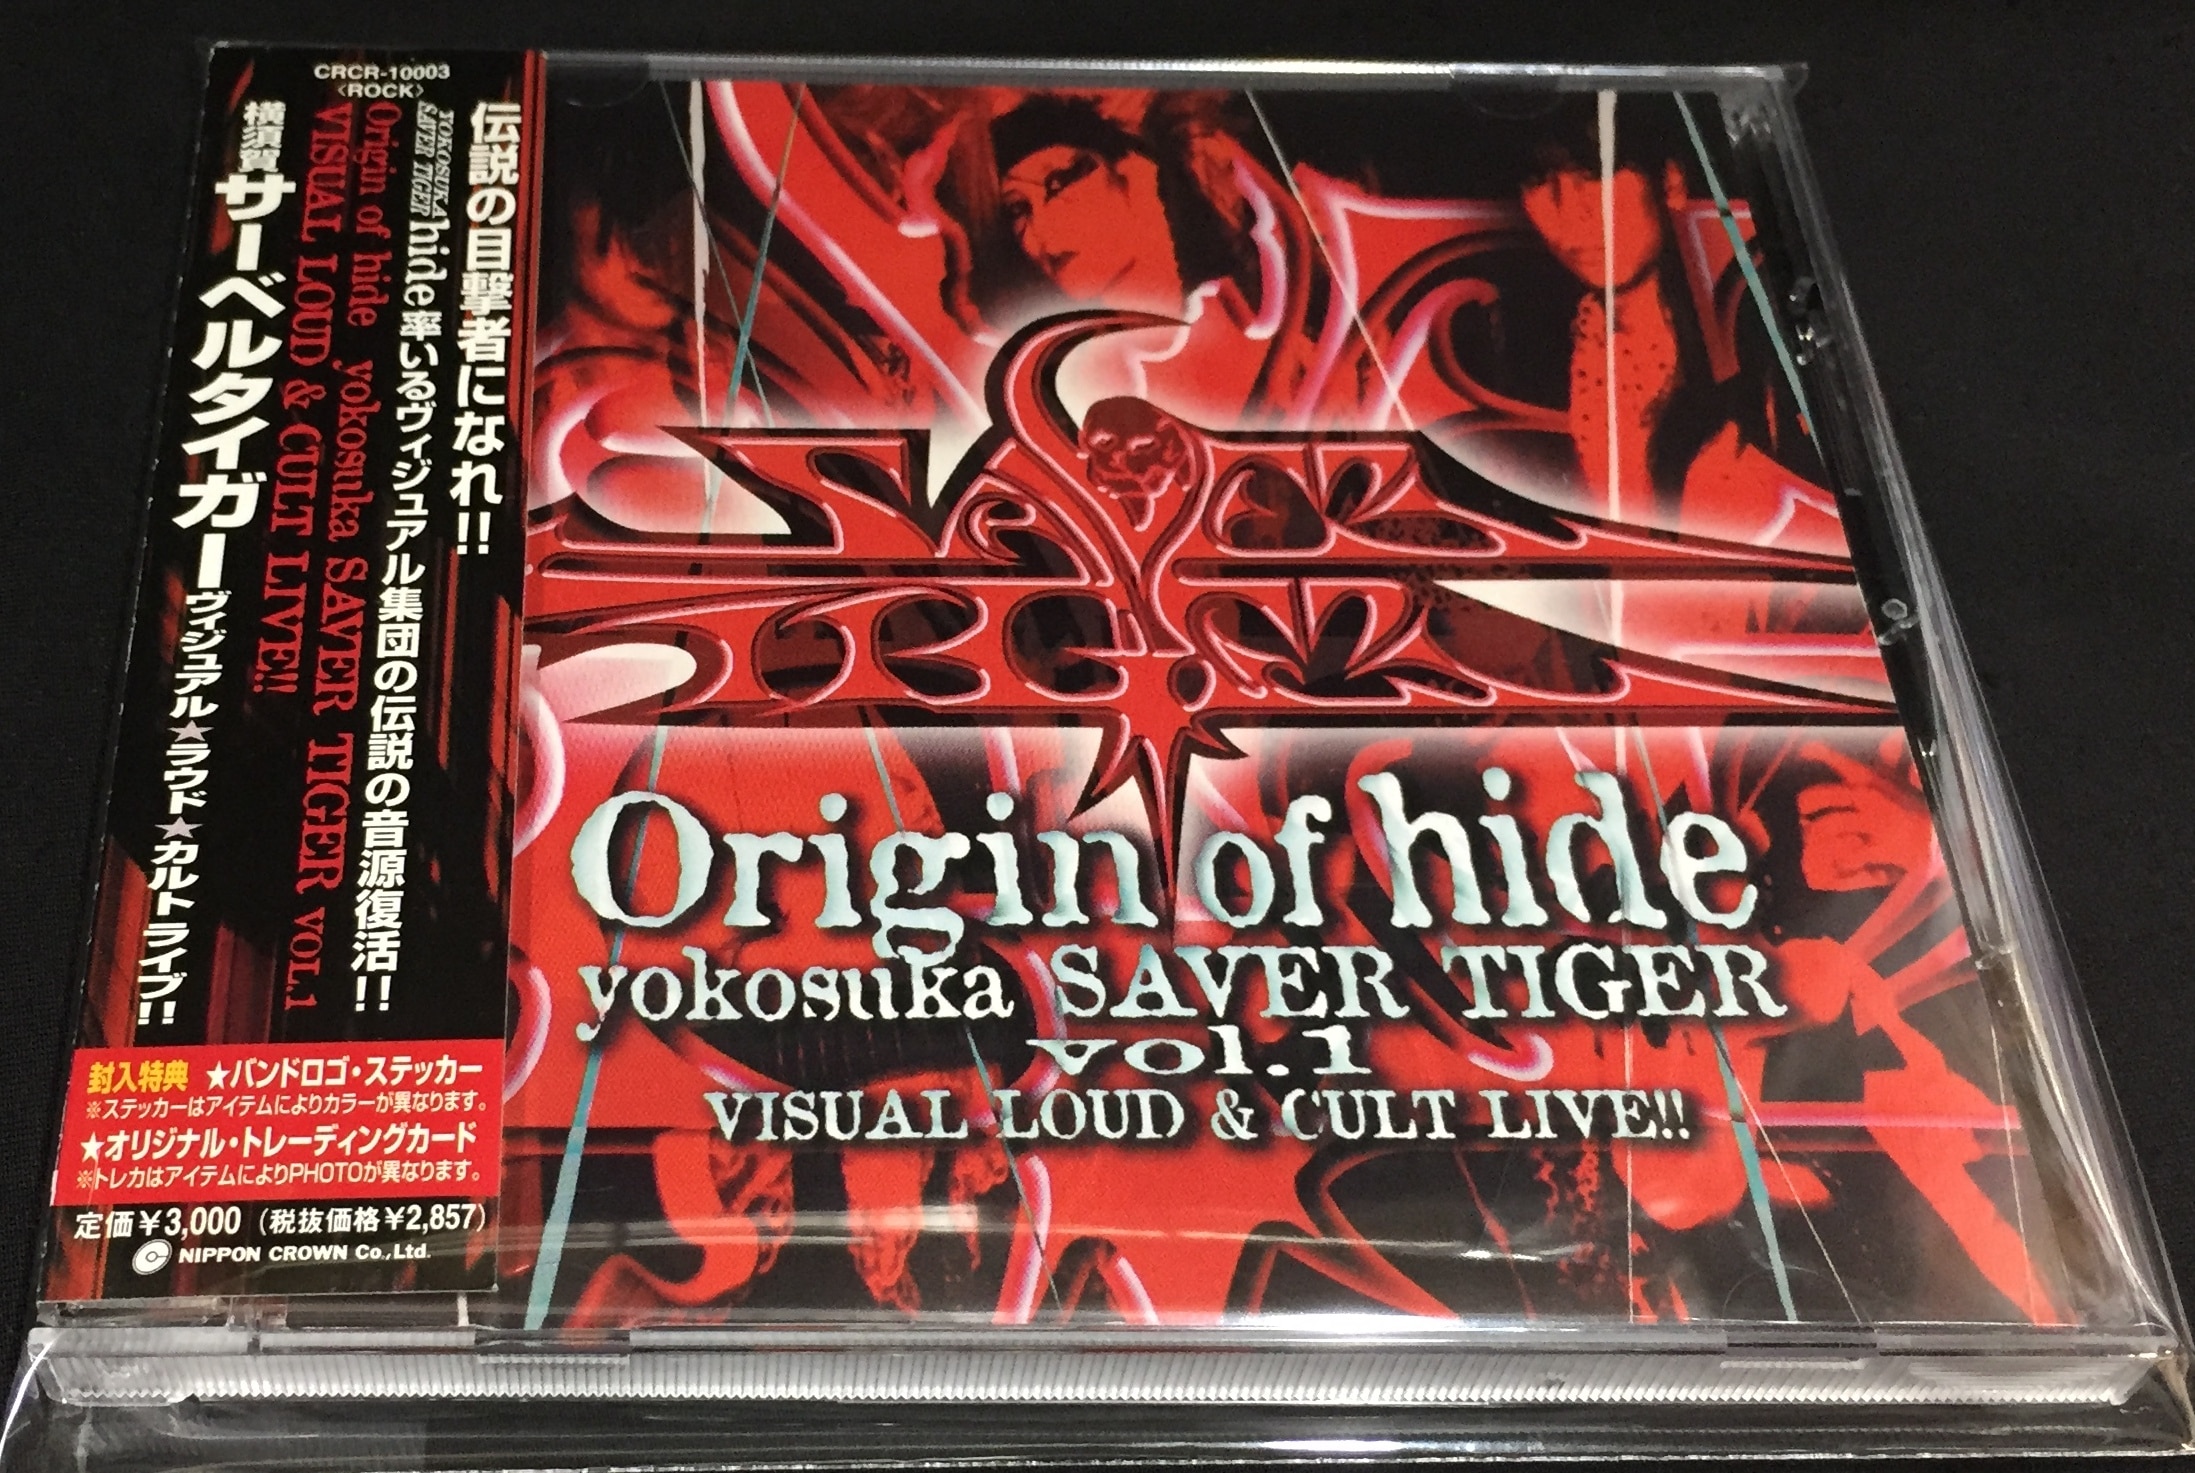 横須賀サーベルタイガー/hide CD Origin of hide yokosuka SAVER TIGER 